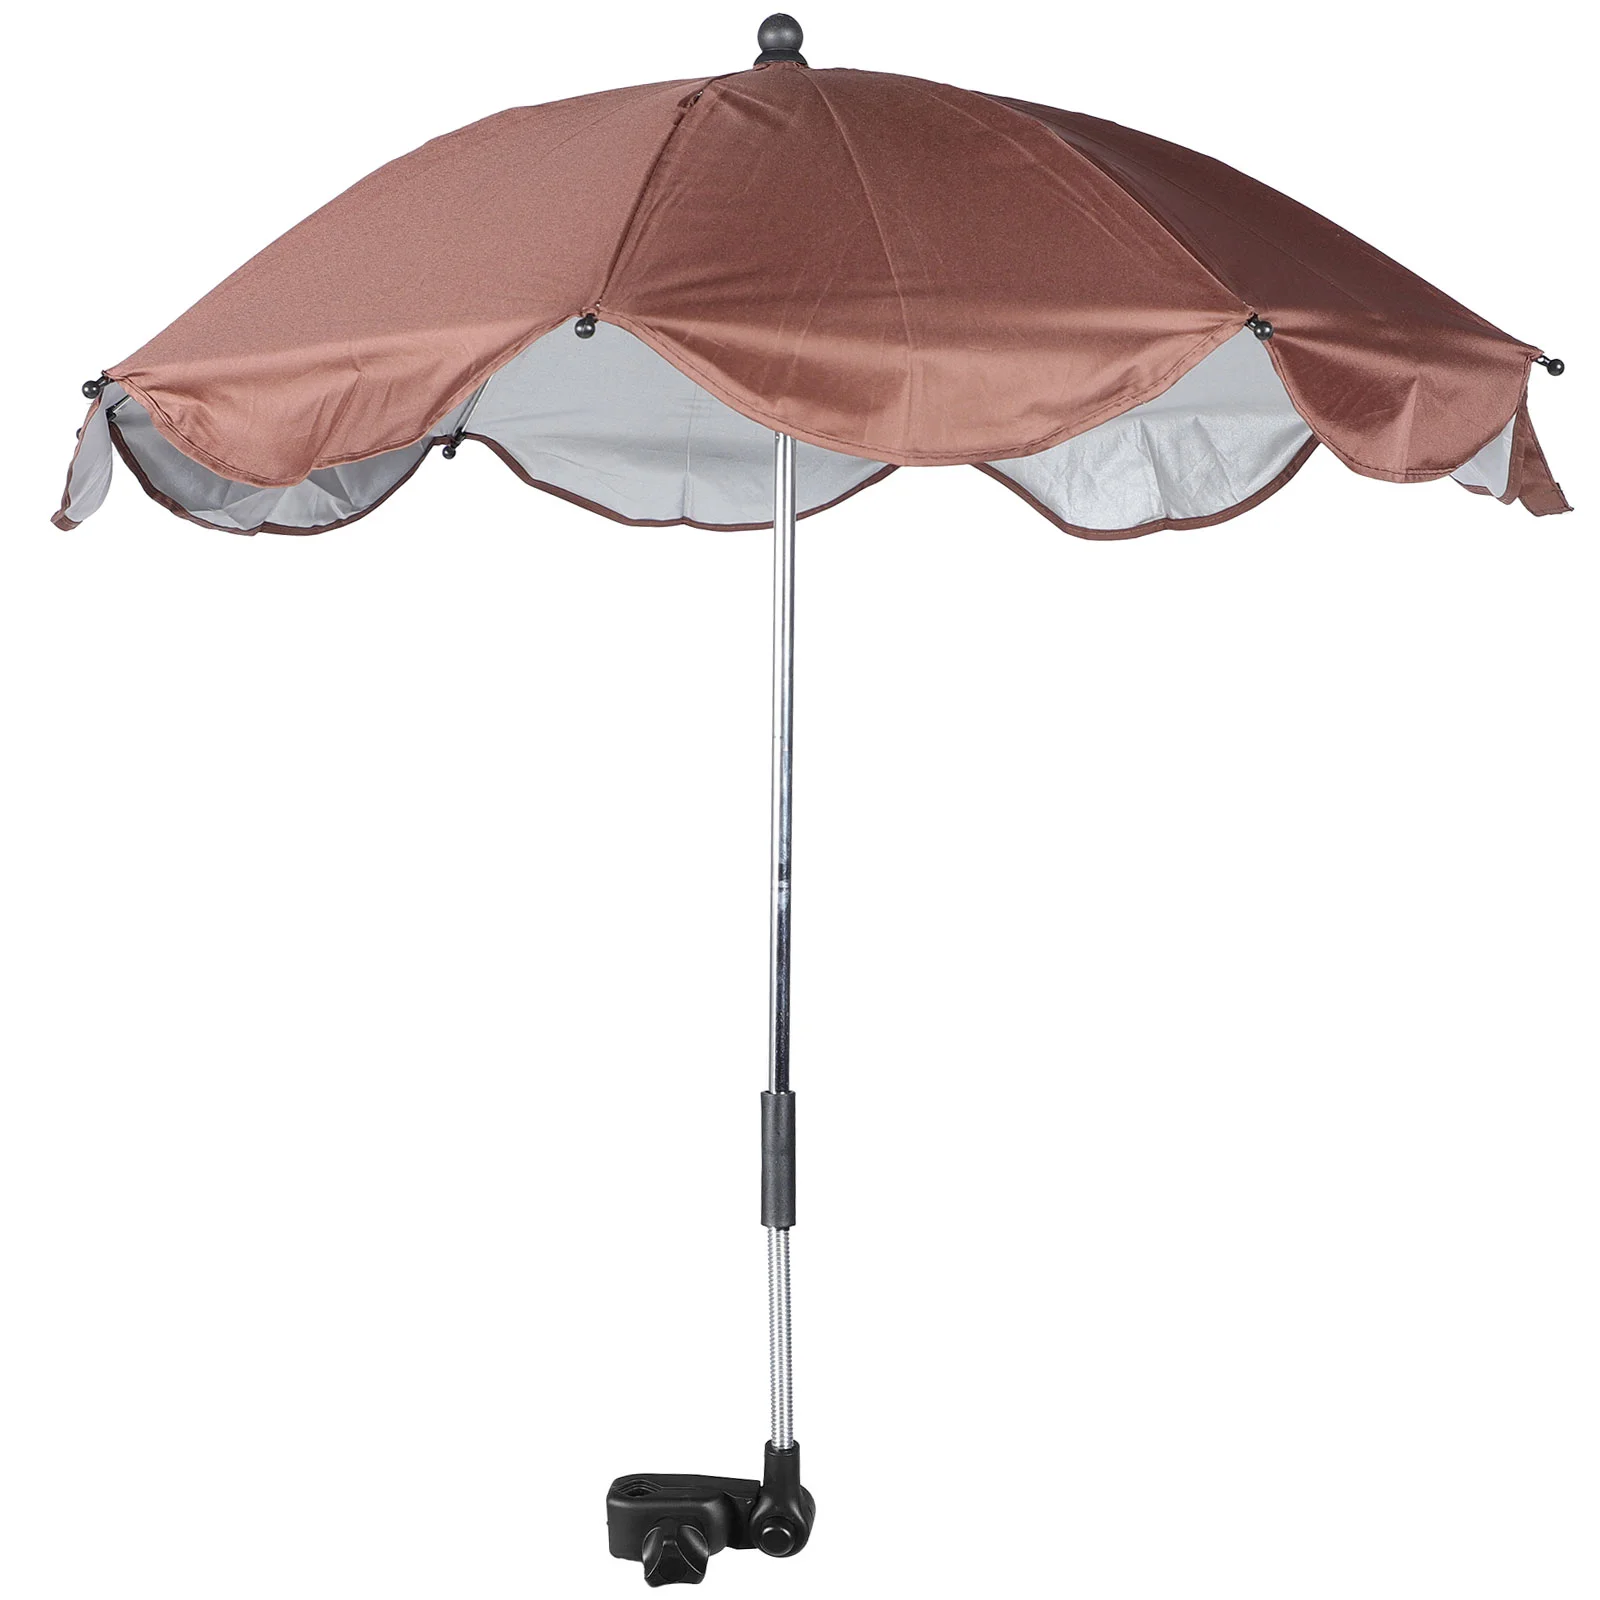 

Стул детский зонтик для коляски Защита от солнца коляска зонтик коляска из полиэстера